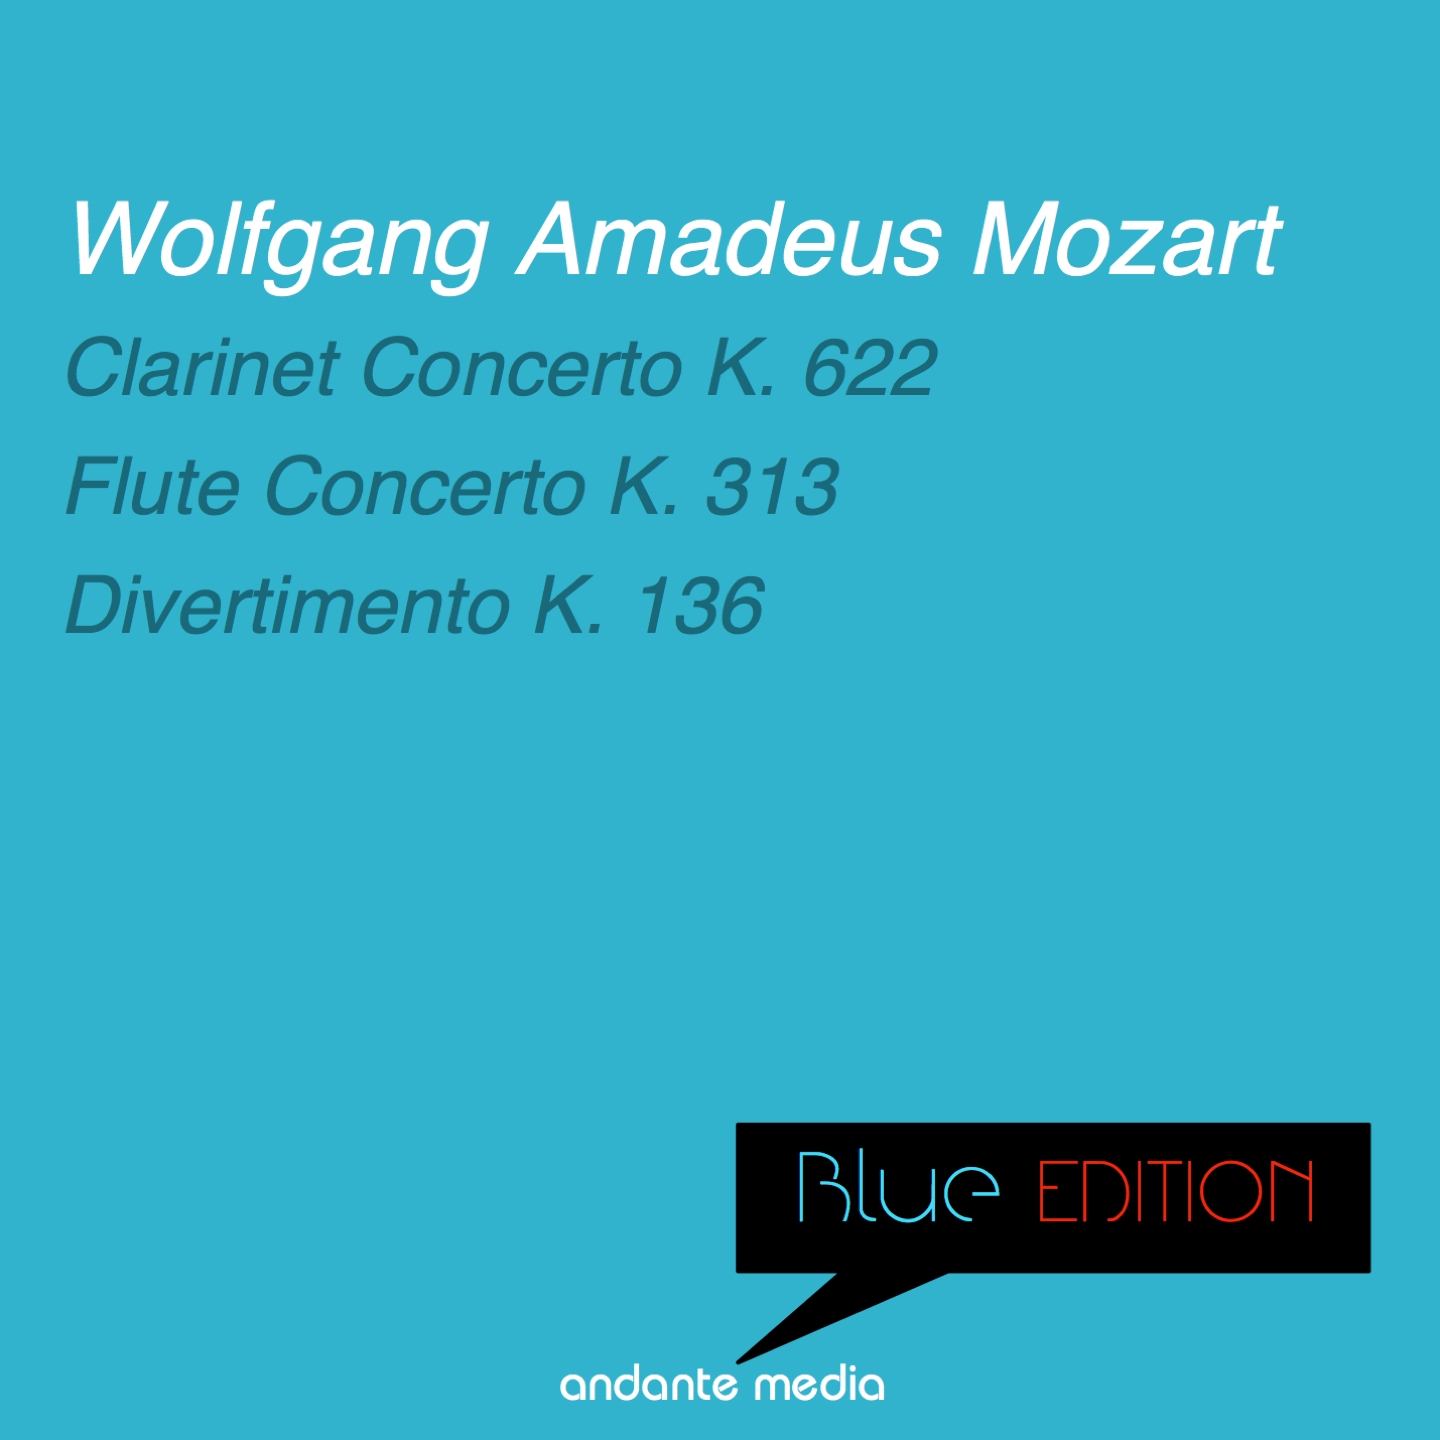 Flute Concerto in G Major, K. 313: III. Rondo. Tempo di menuetto